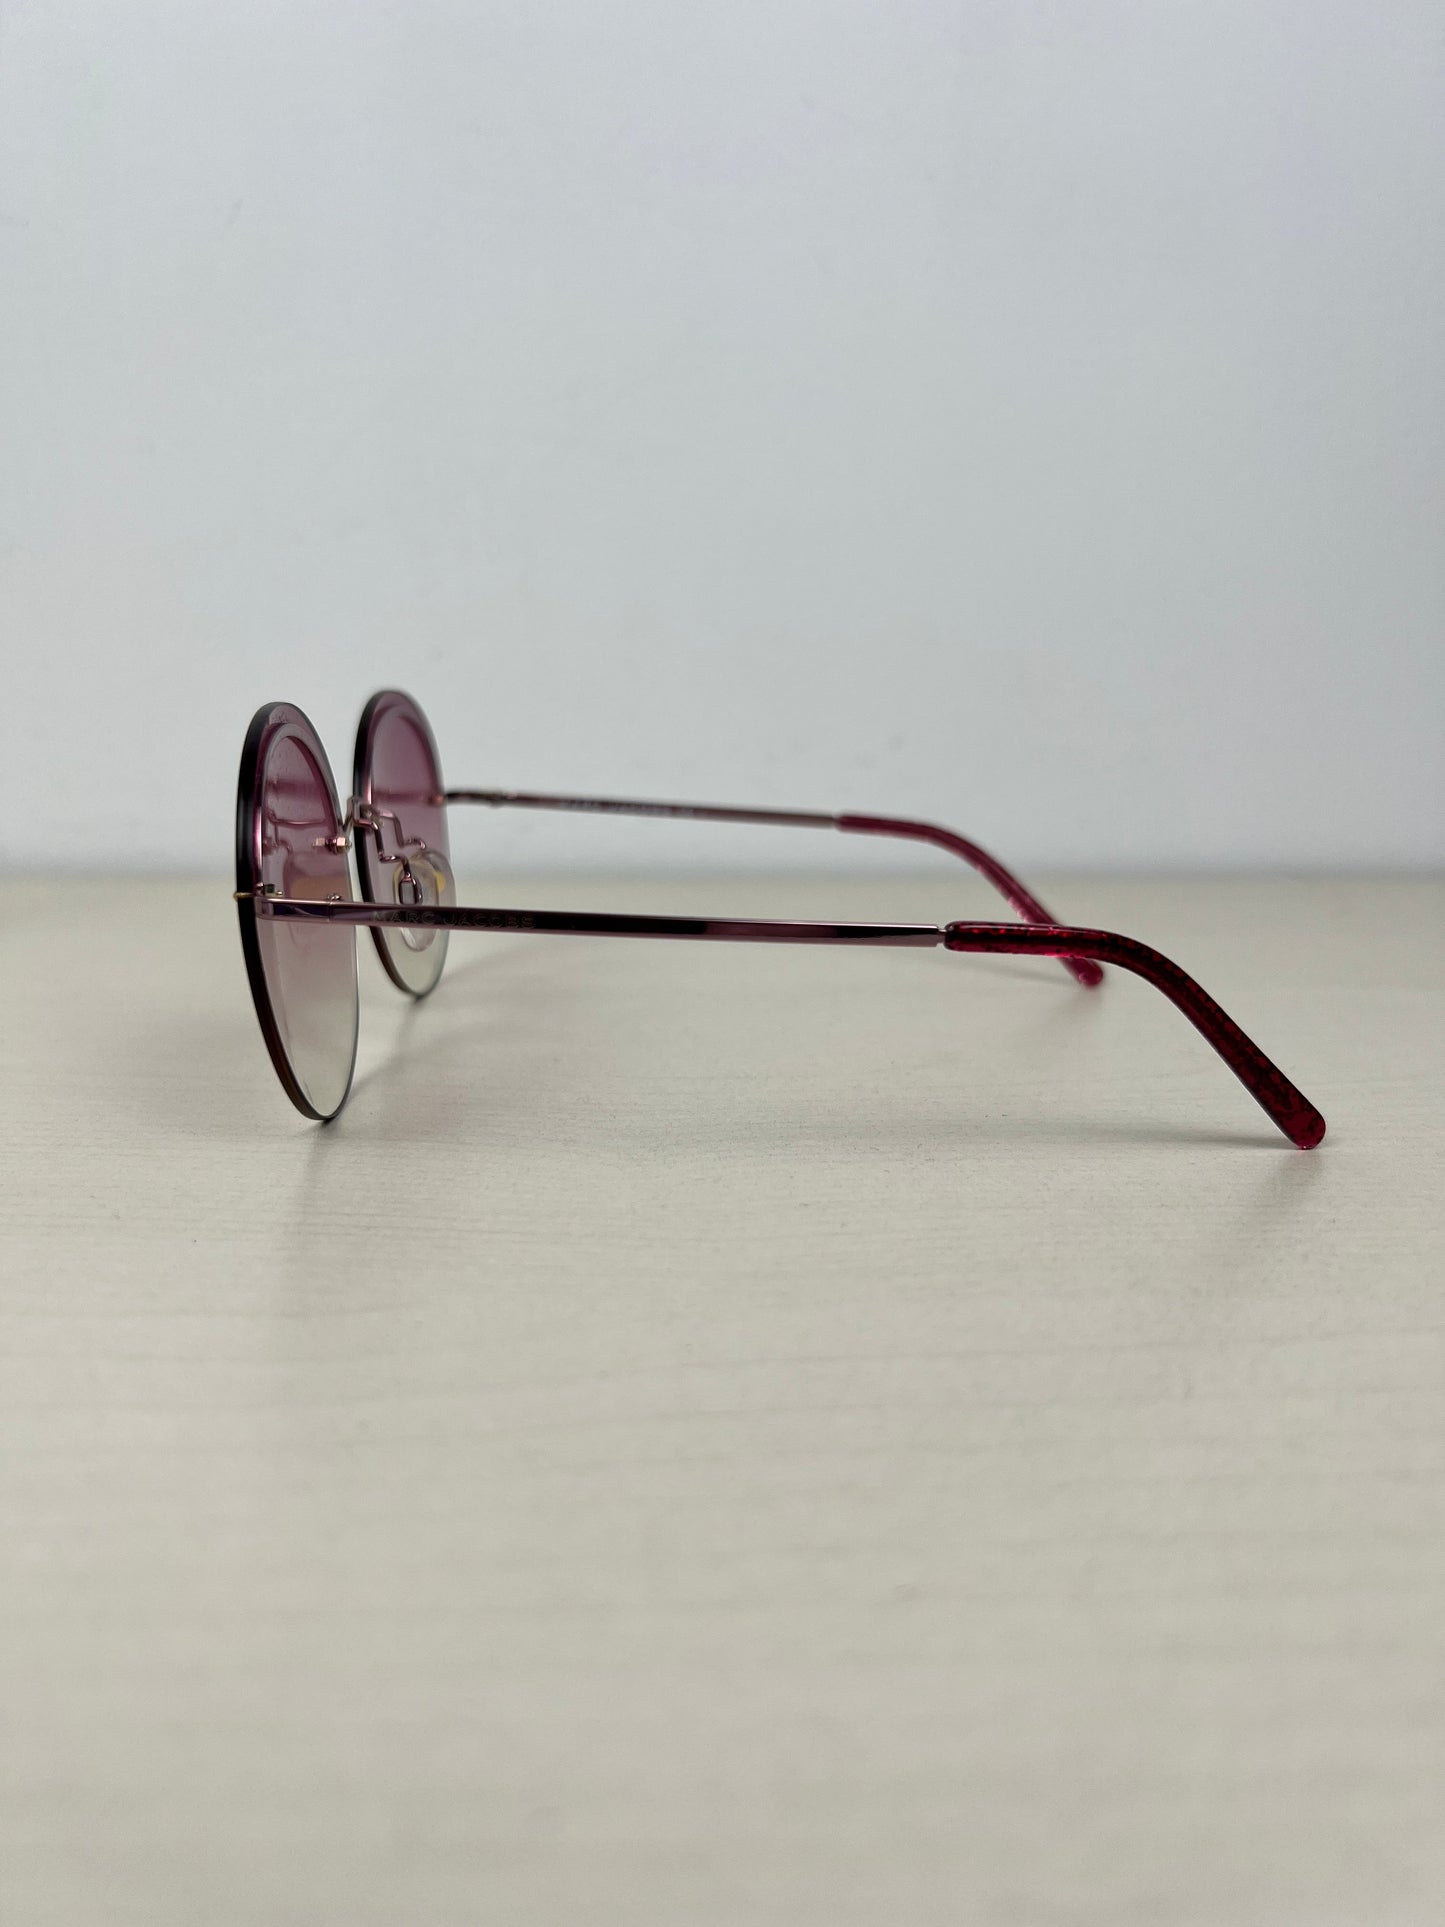 Sunglasses Designer Marc Jacobs